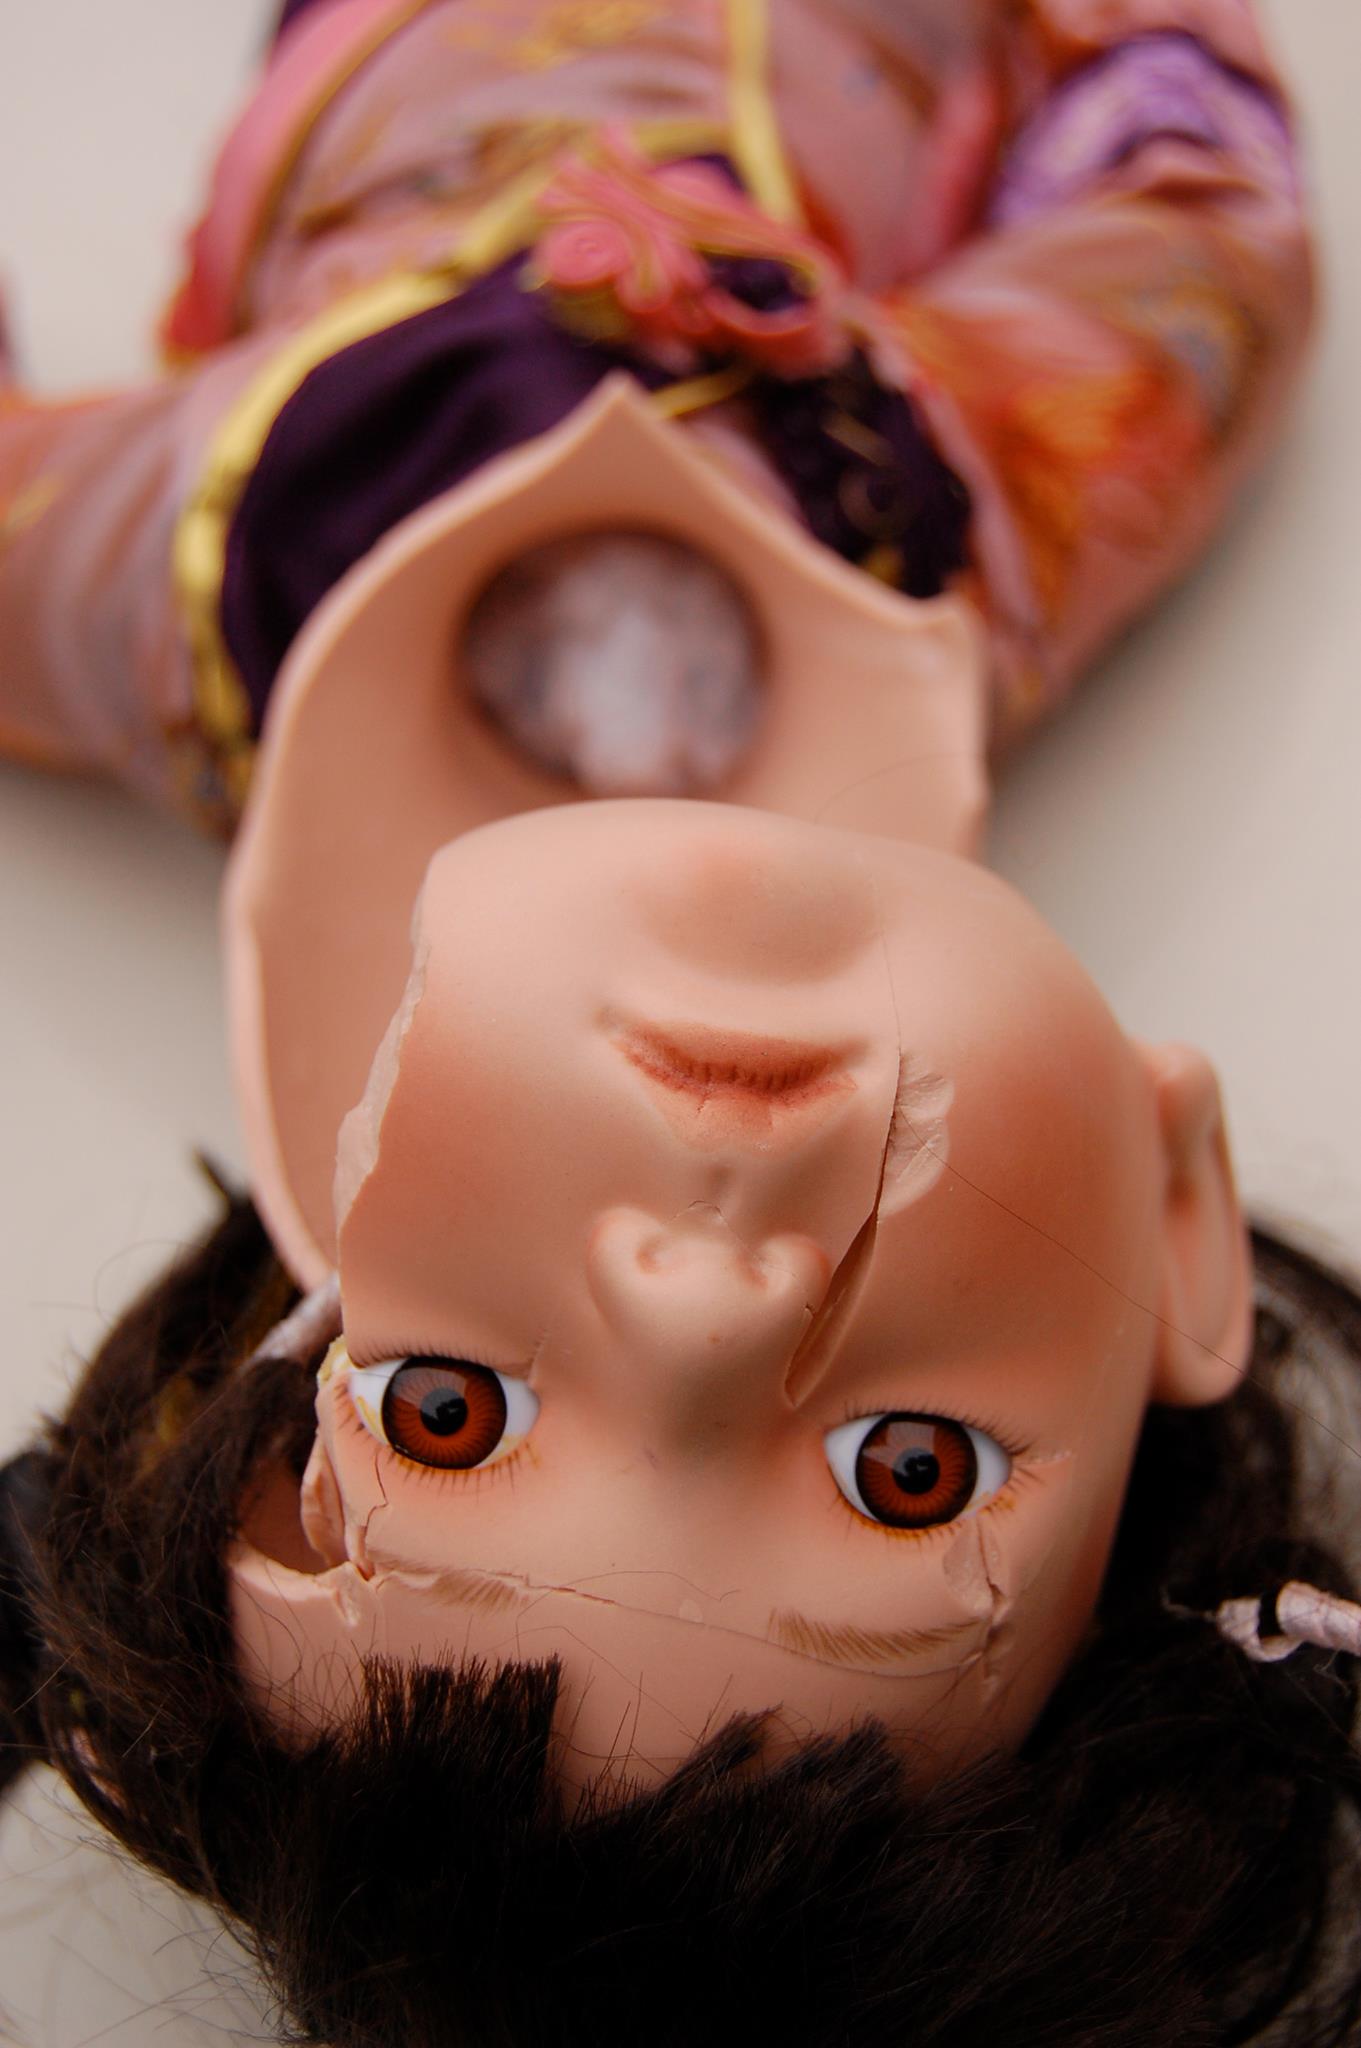 Broken ceramic doll upside down